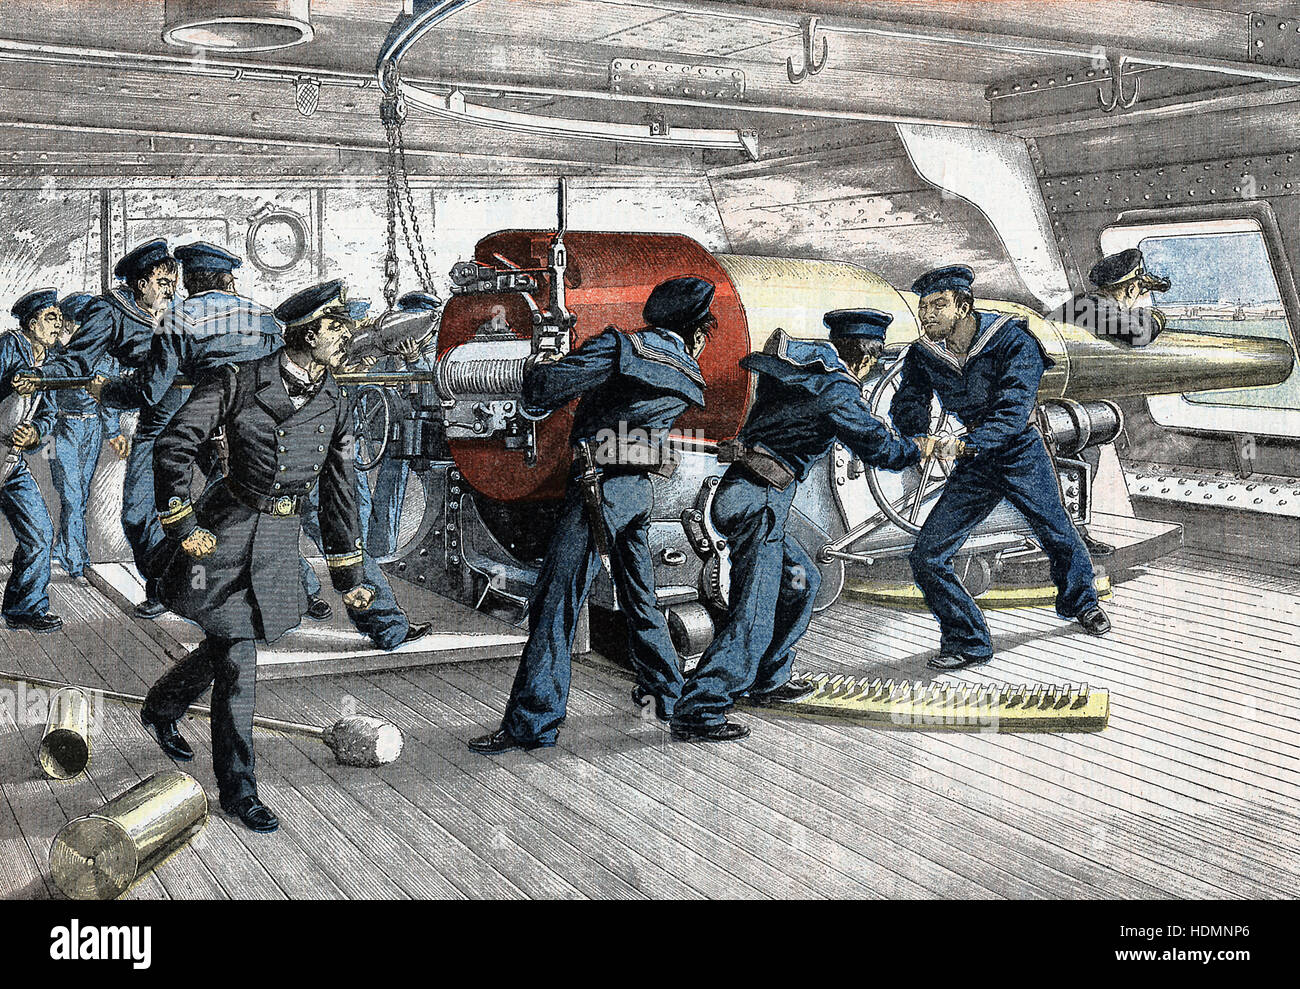 "Le Petit Journal" - Russisch-Japanischen Krieg 1904 - 1905 - Szene an der Pistole deck eines japanischen Kriegsschiffes in Aktion. Stockfoto